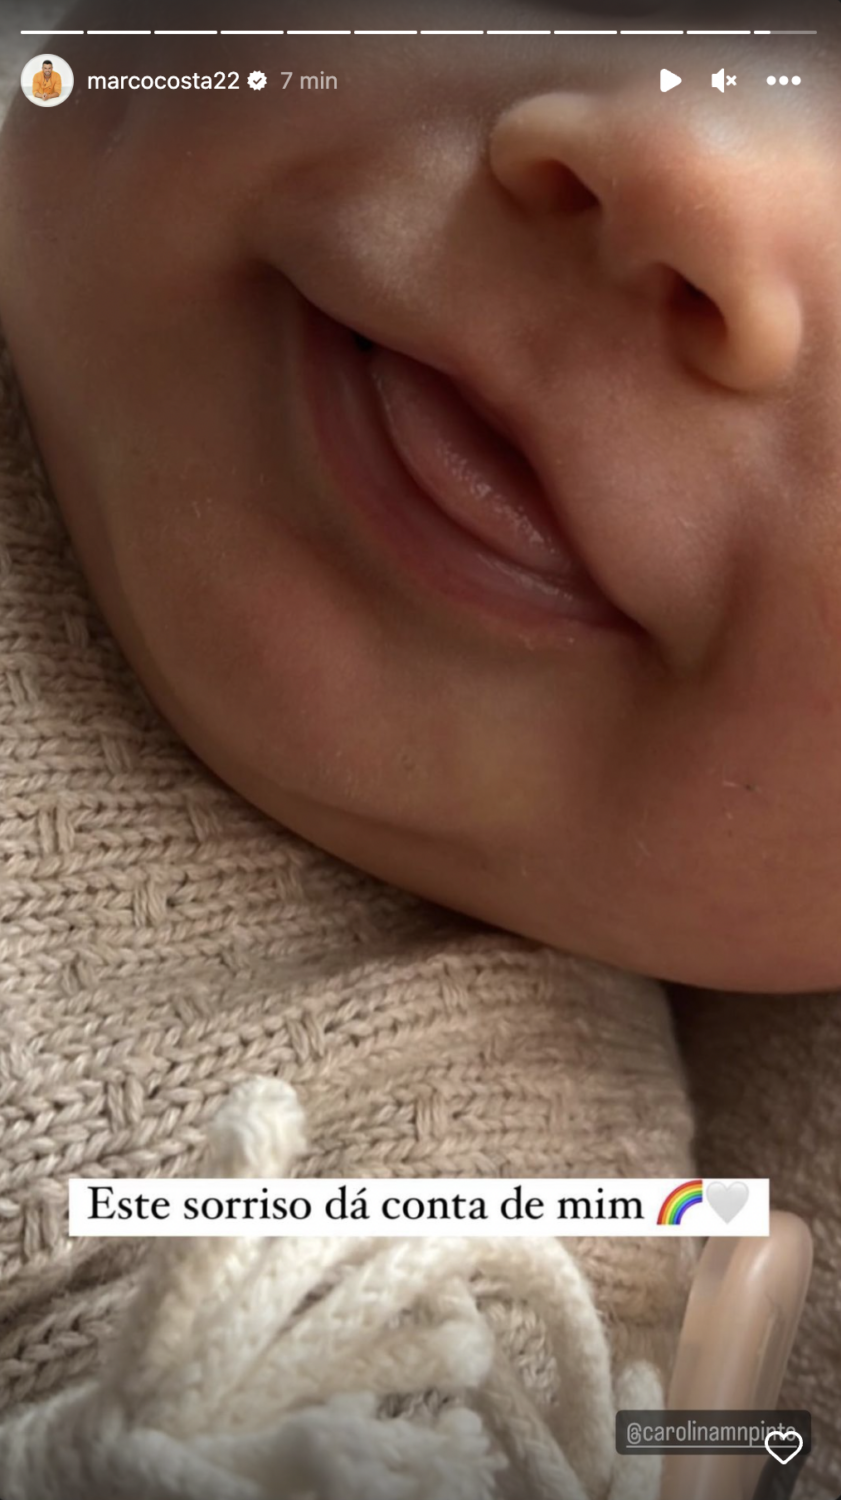 Marco Costa revela nova foto da filha bebé: &#8220;Este sorriso dá conta de mim&#8221;